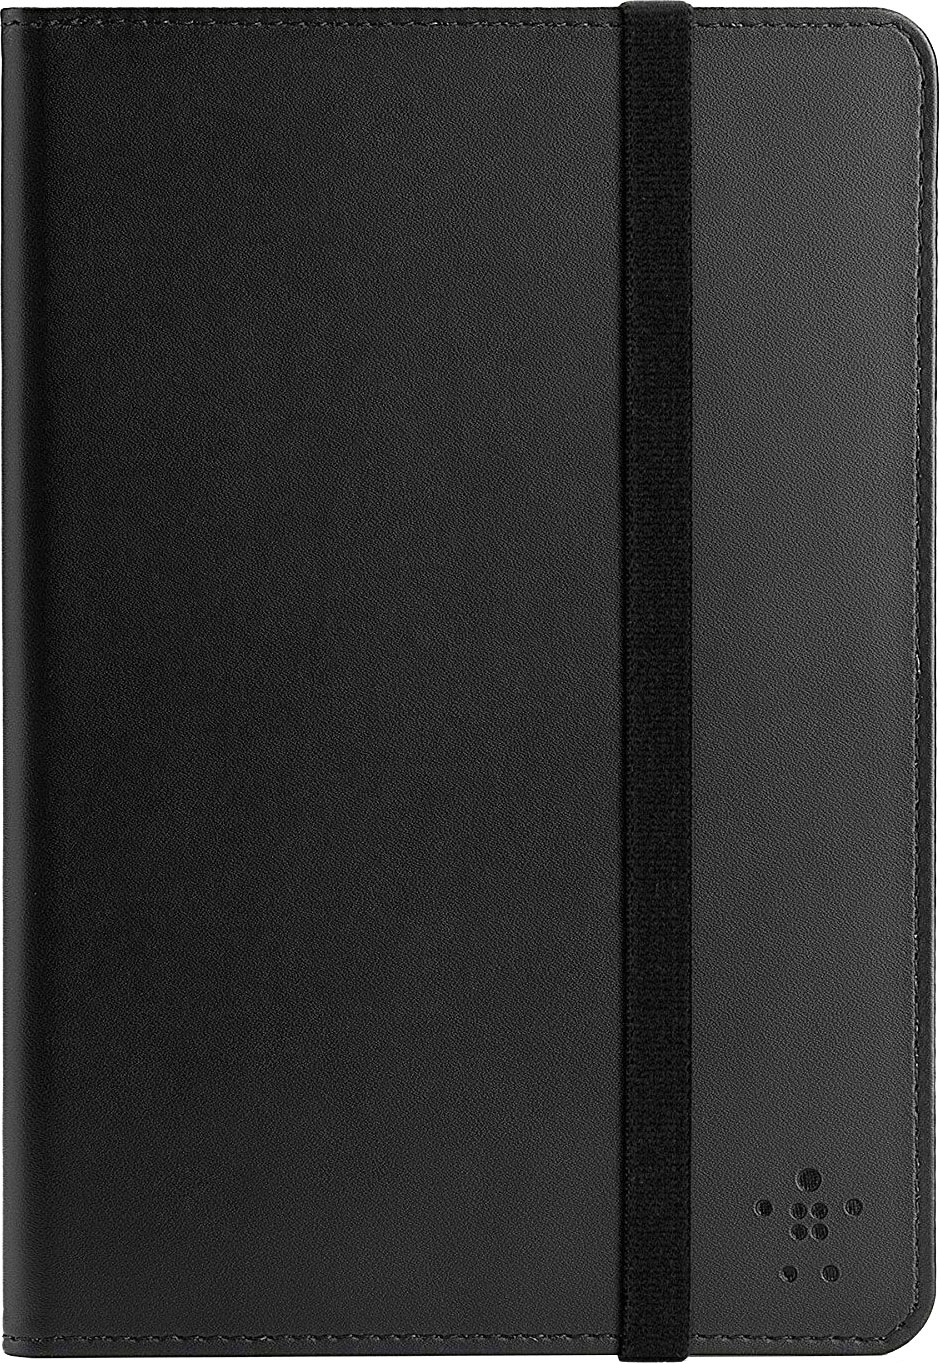 Чехол на планшет BELKIN Bi-Fold Strap Cover для iPad mini 7.9" Black (F7N036vfC00) в Киеве